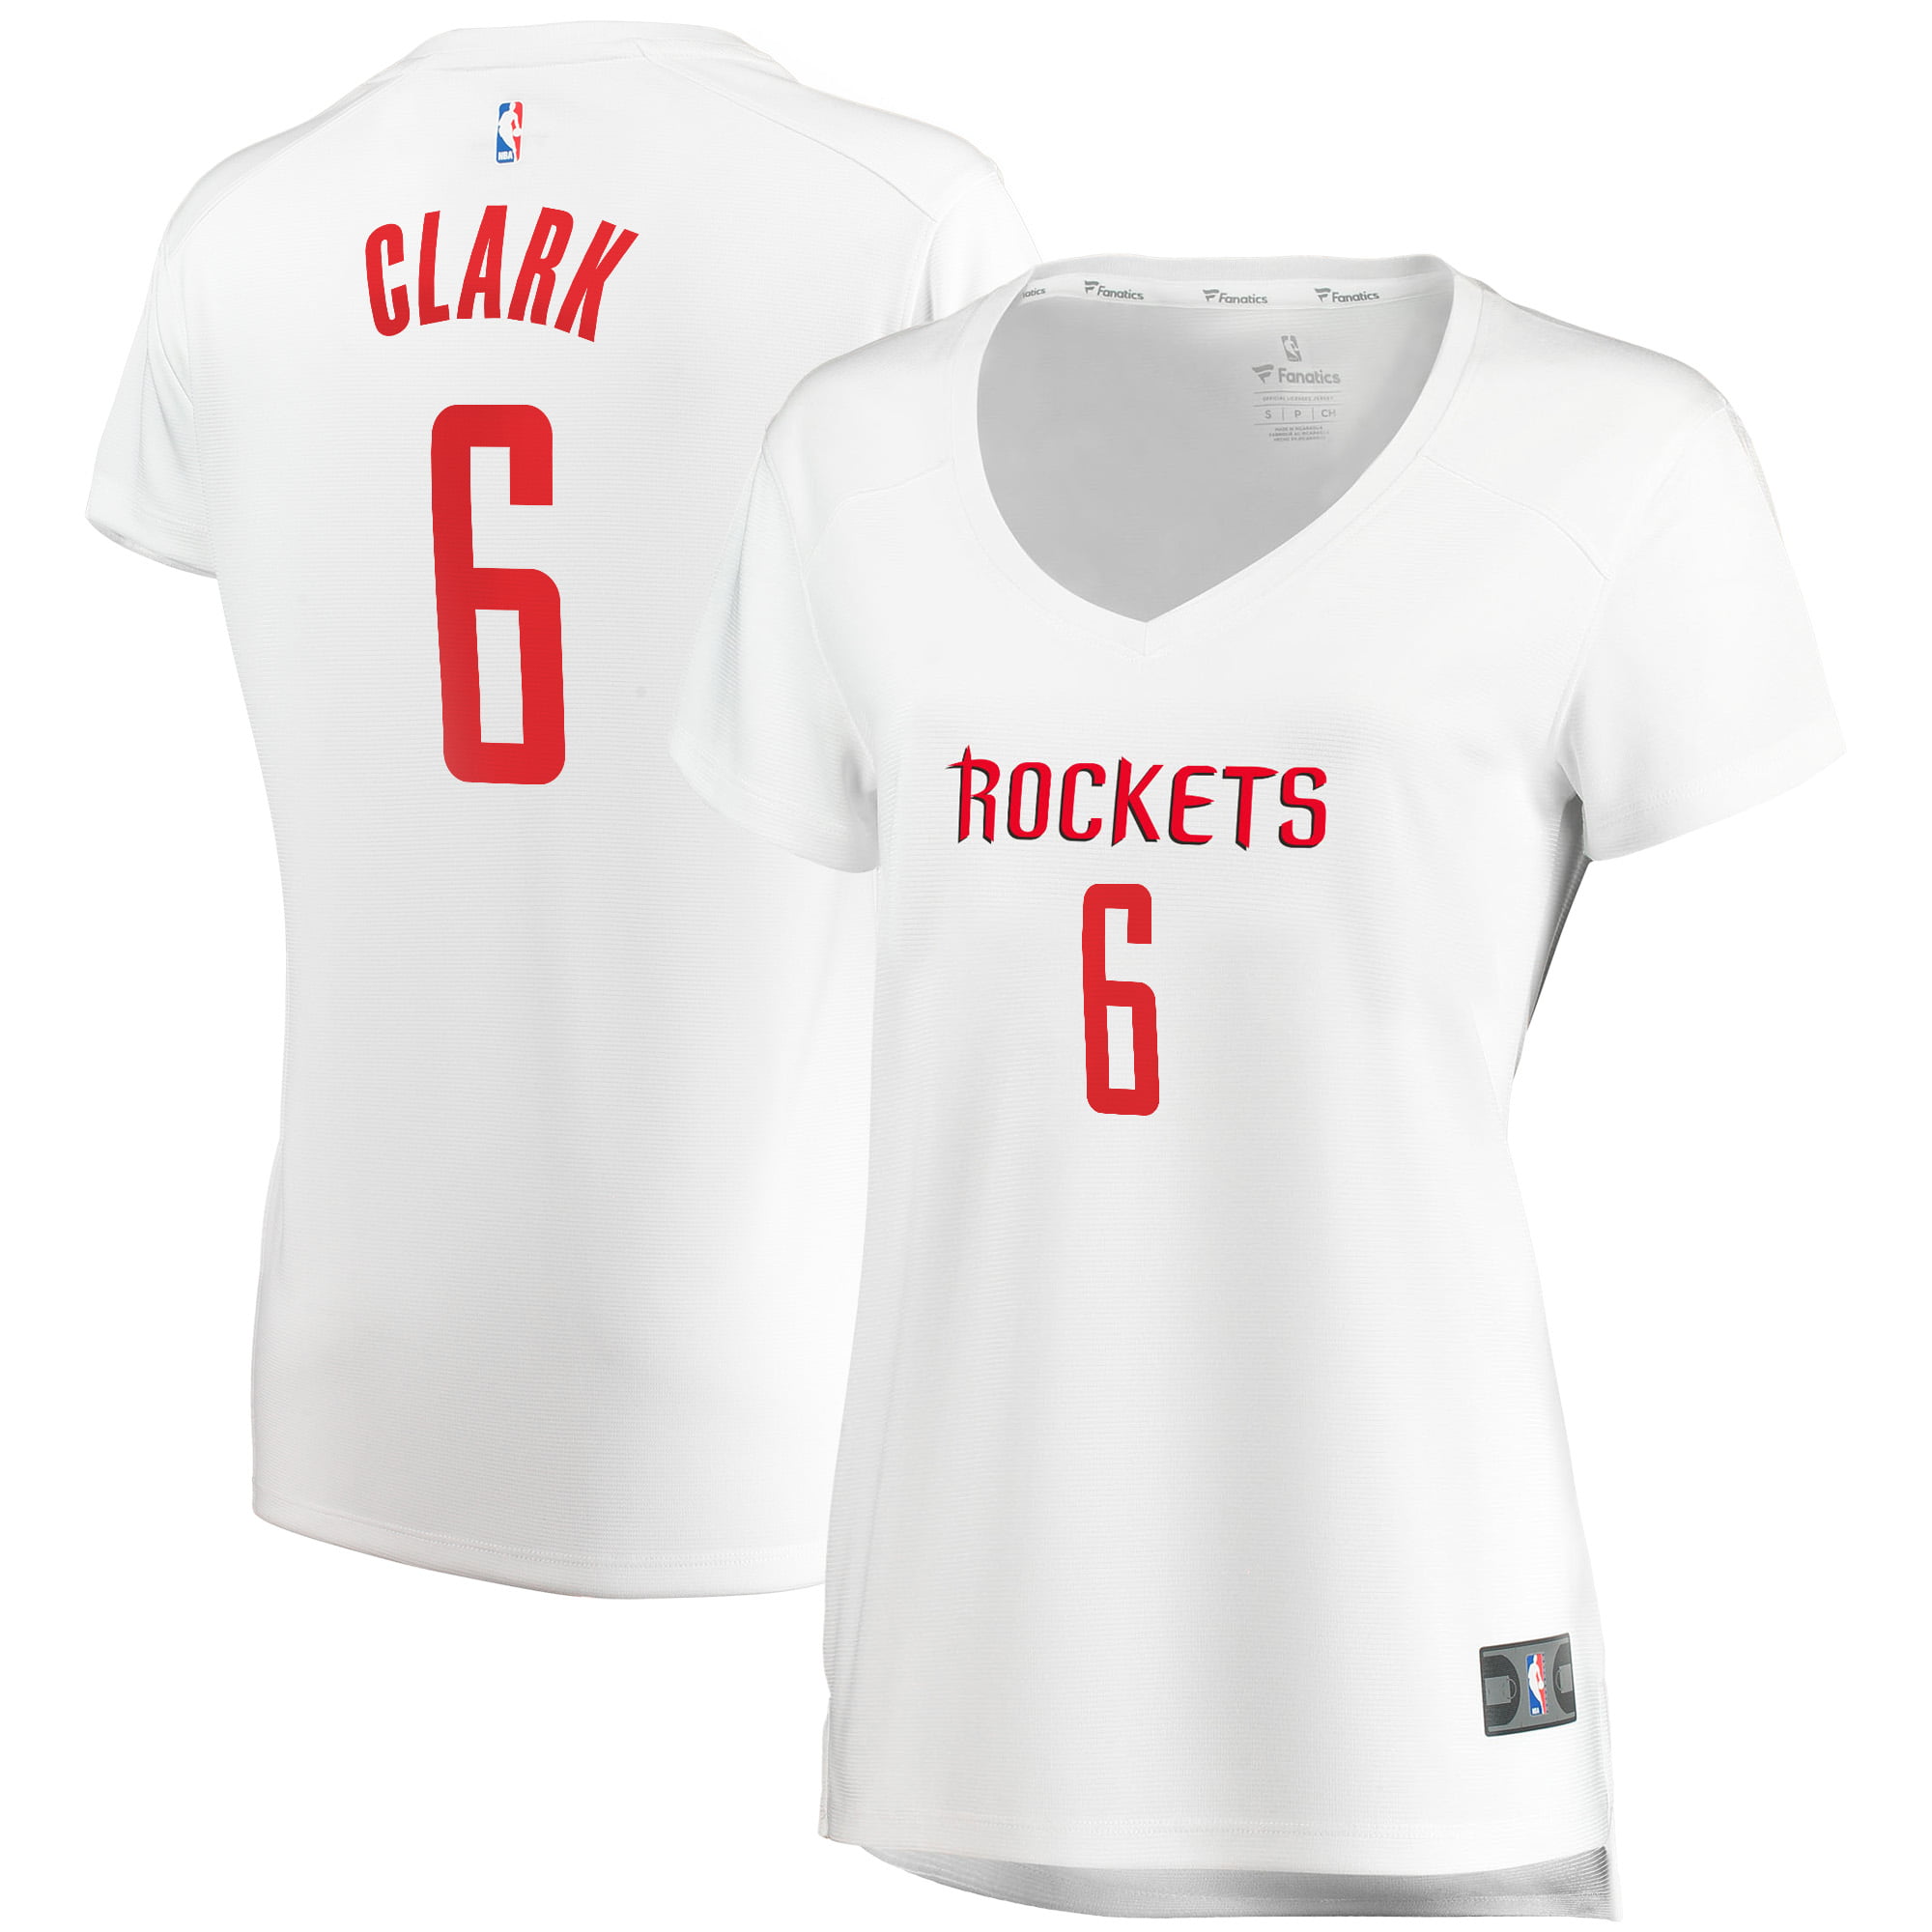 gary clark jersey rockets